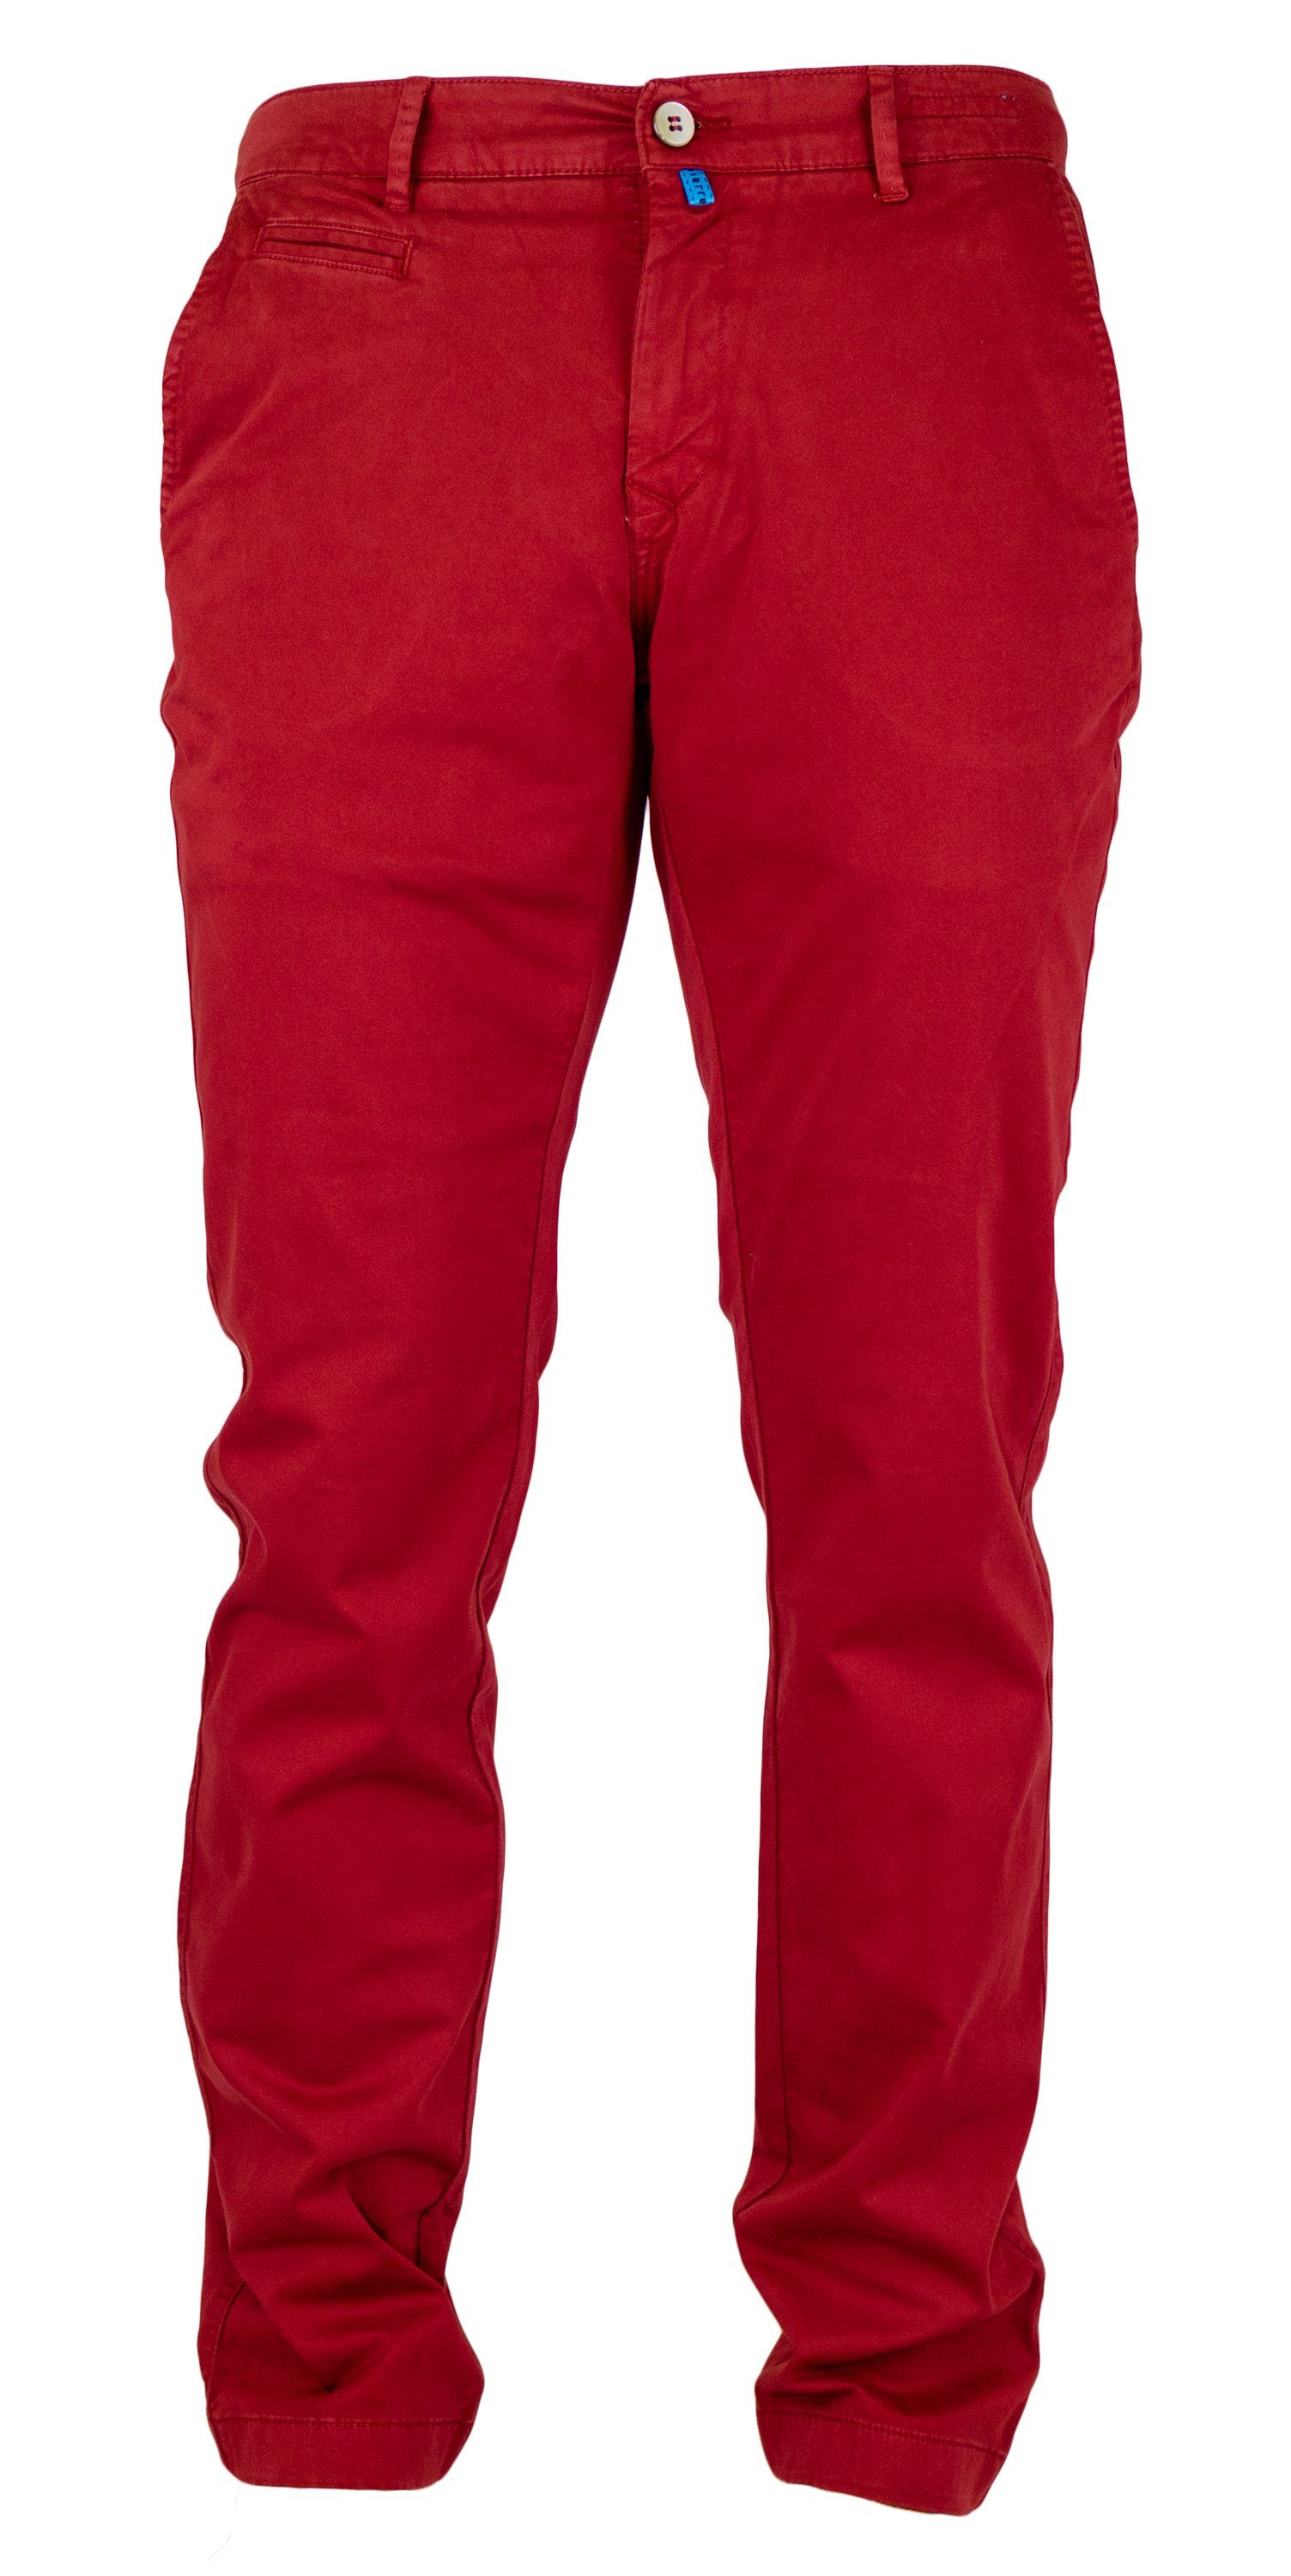 Herren Jeans in rot online kaufen | OTTO